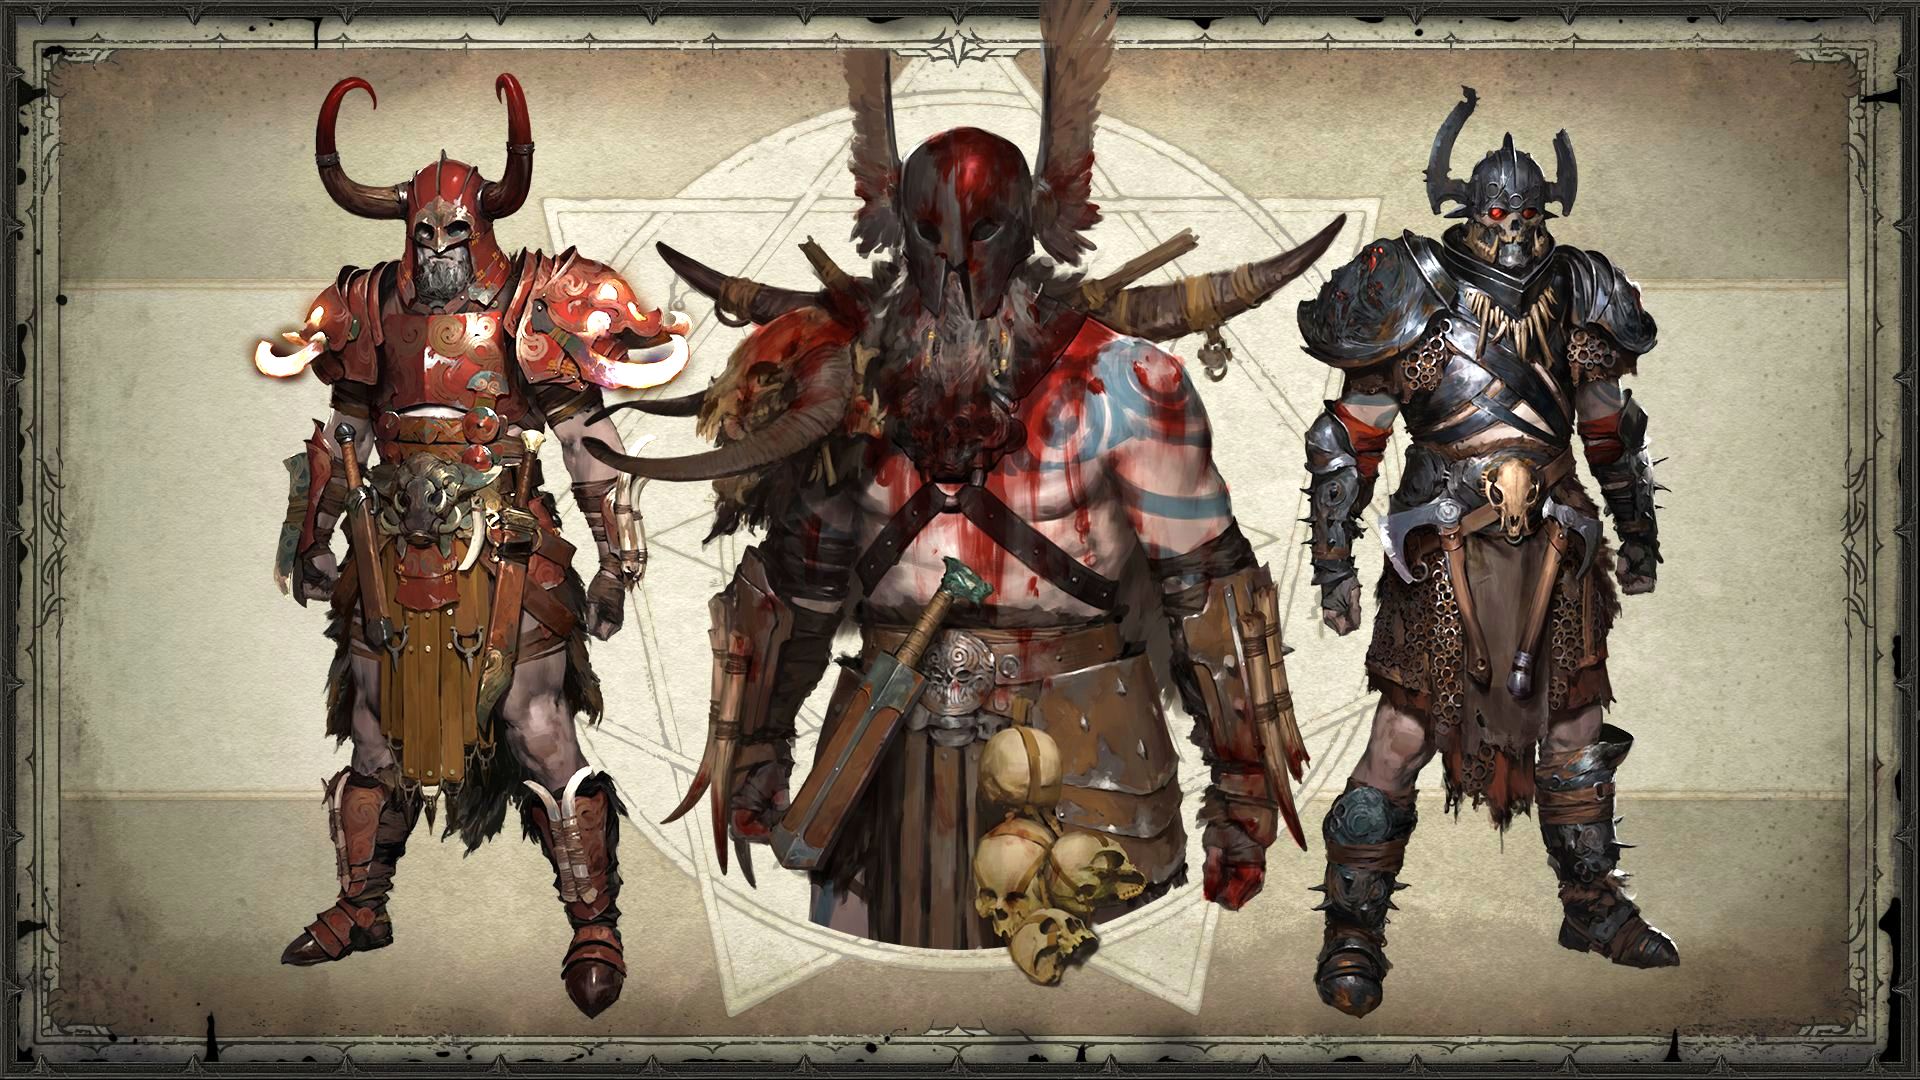 Version barbare de Diablo 4 : art conceptuel de l'armure et de l'équipement taquiné avant la version bêta de Diablo 4, allant de la cuirasse ornée aux enveloppes de cuir et aux accessoires en os.